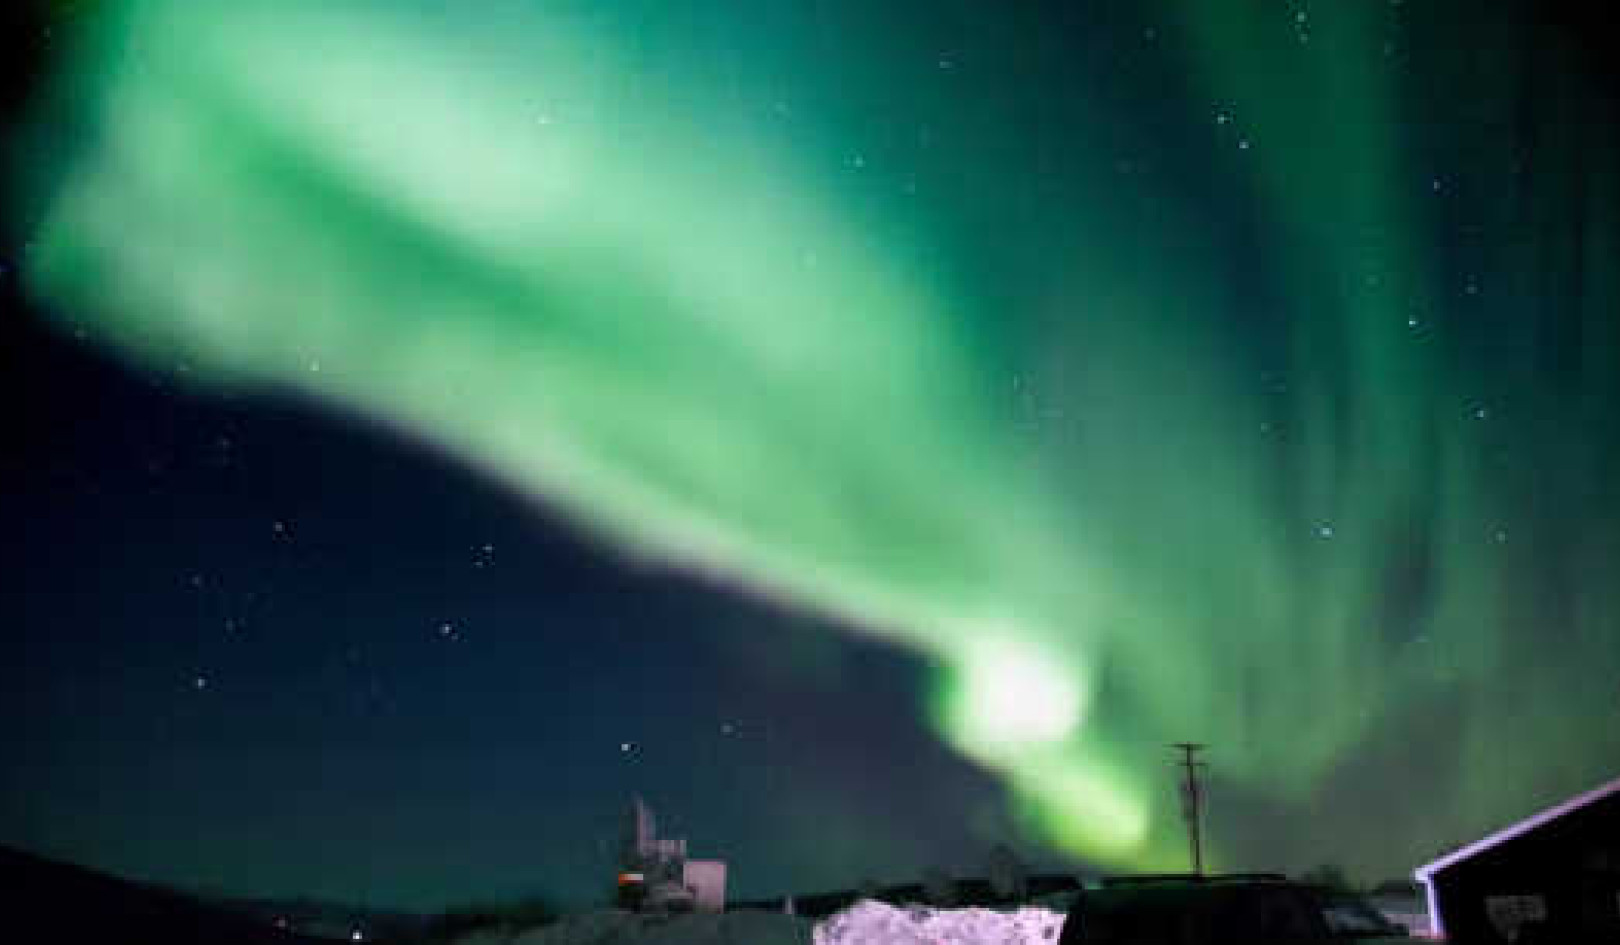 De ce vedem mai multe aurore boreale?